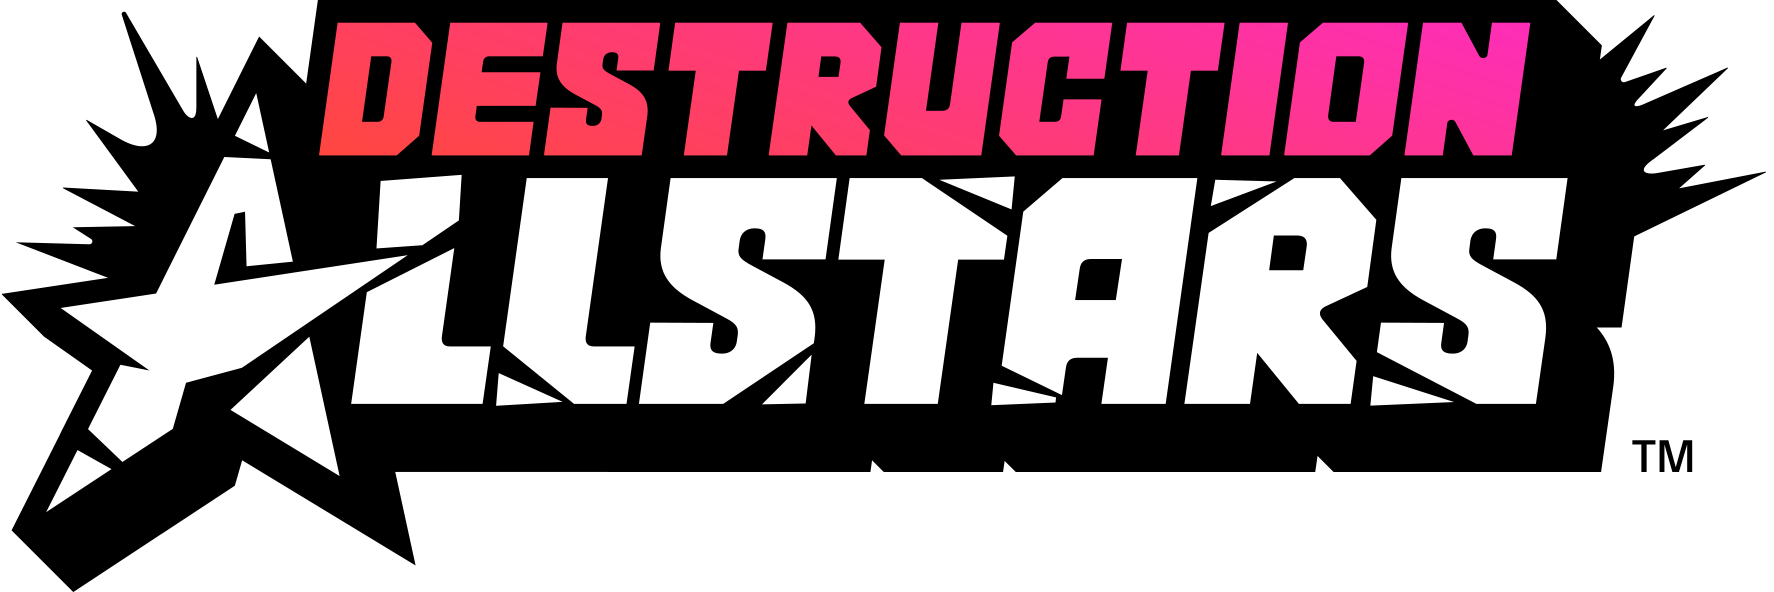 Destruction AllStars (TM)